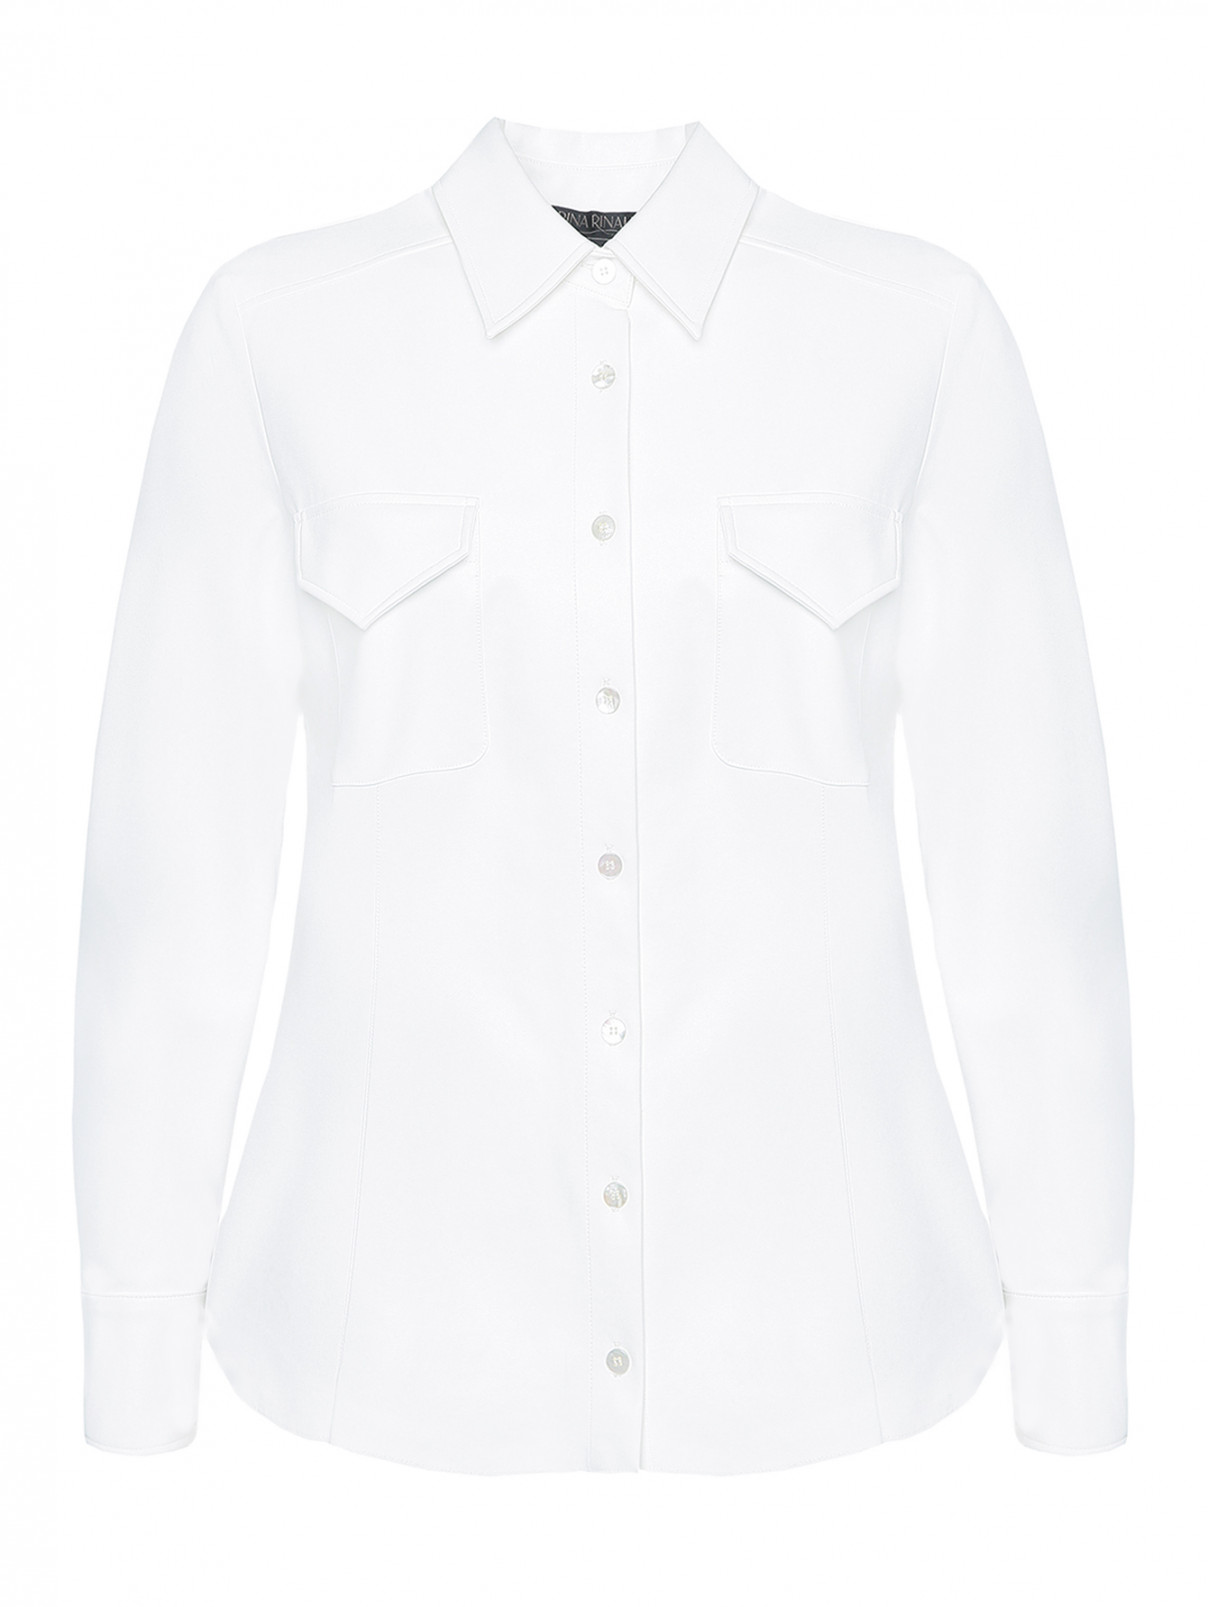 Рубашка из эко-кожи на пуговицах Marina Rinaldi  –  Общий вид  – Цвет:  Белый